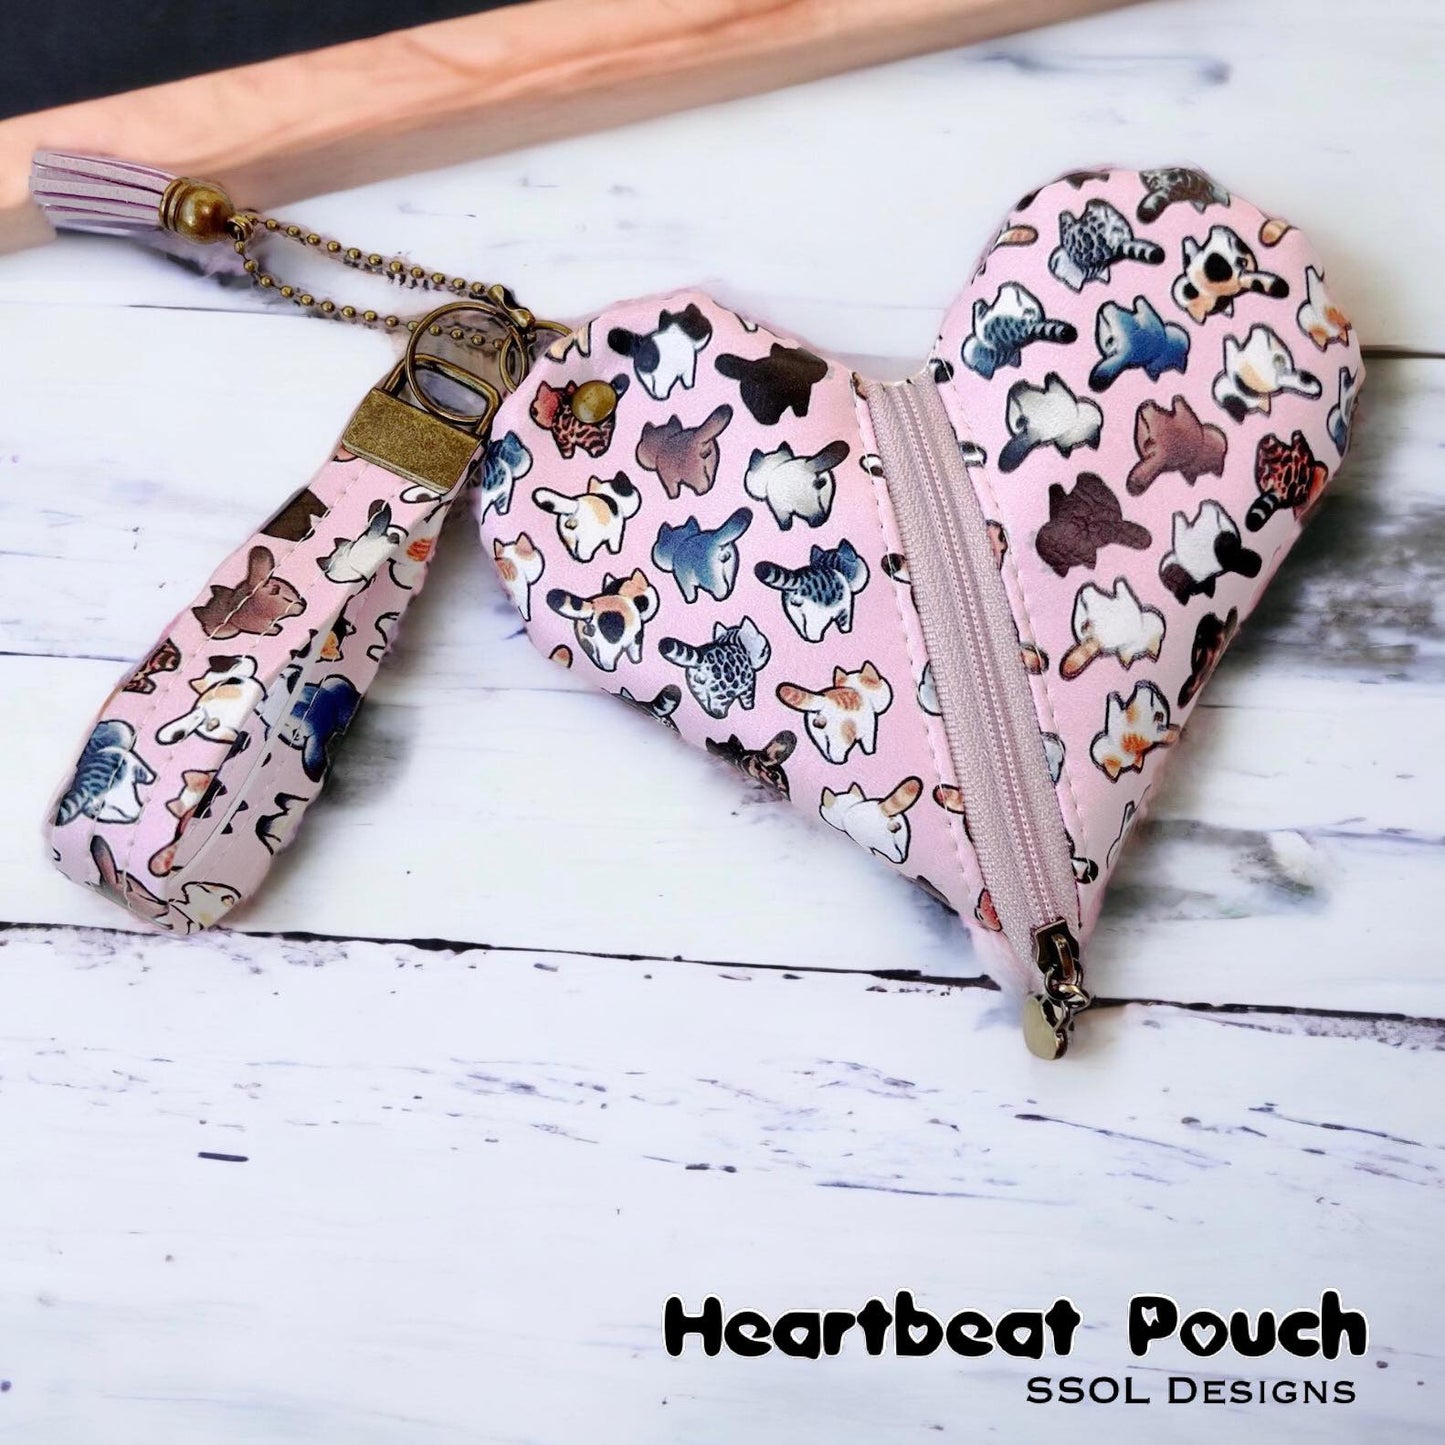 Heartbeat Pouch Pattern